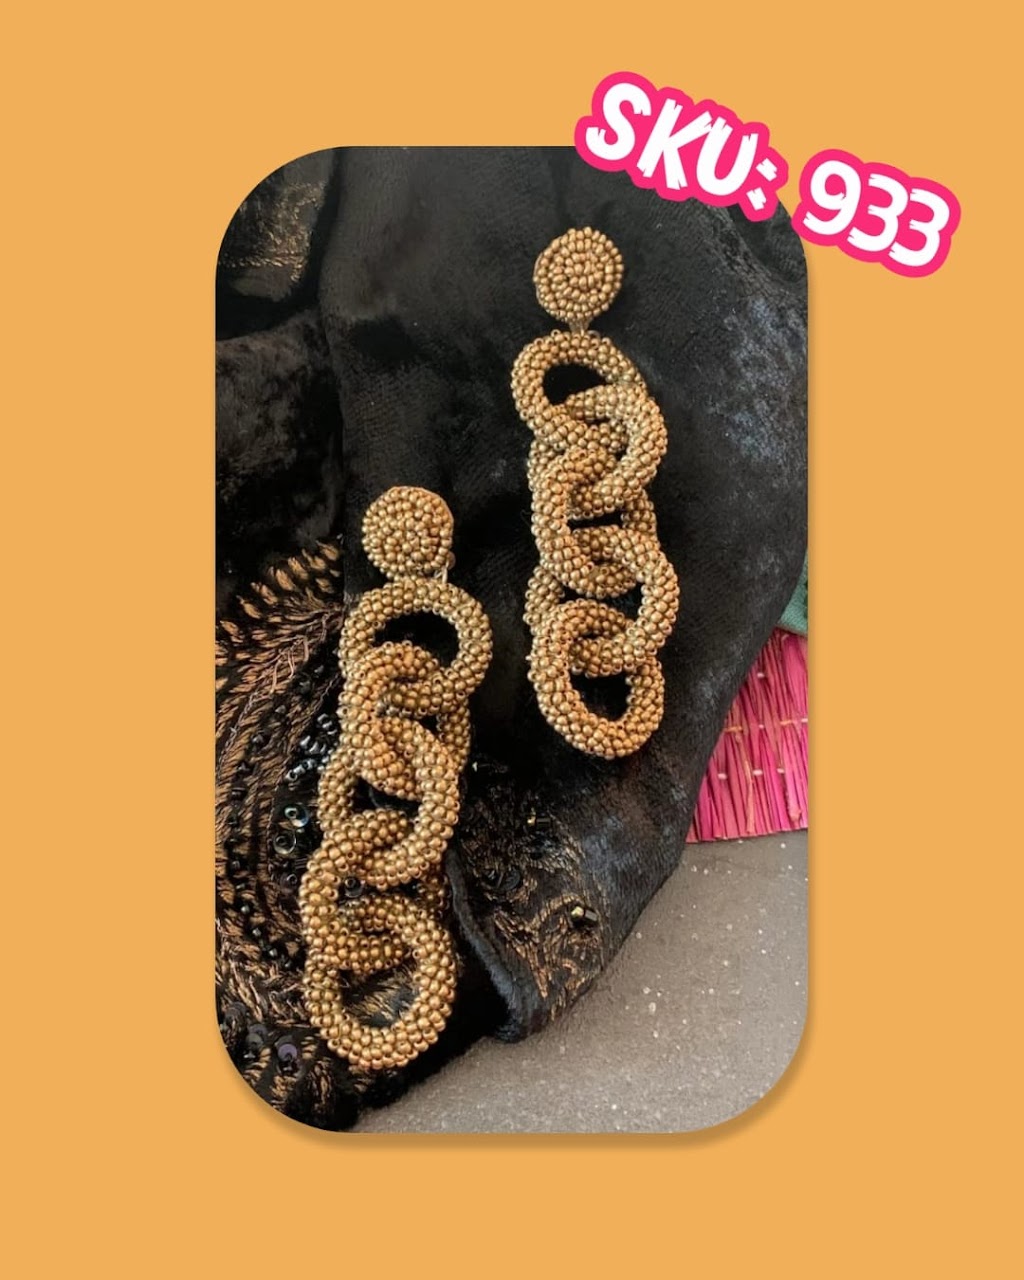 Fields Beads Handmade Jewelery | 1504 Ocean Ave APT 4I, Brooklyn, NY 11230 | Phone: (718) 710-2473